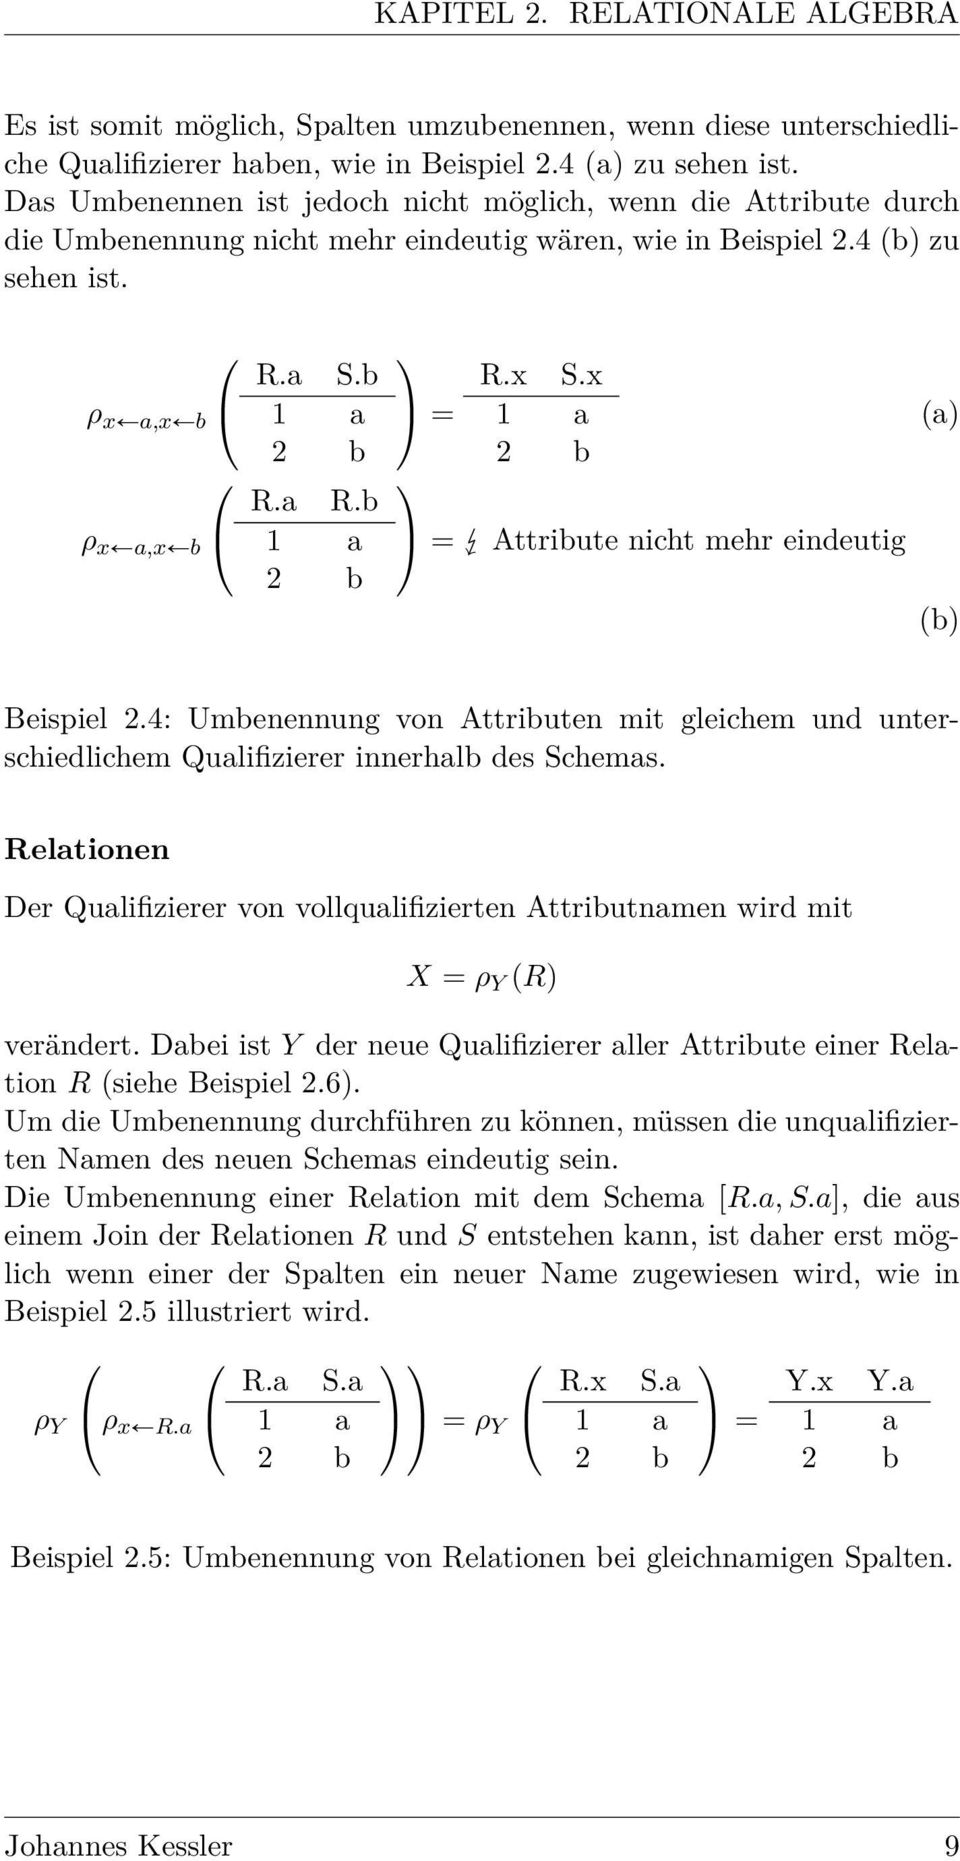 b 1 a 2 b = R.x S.x 1 a 2 b = Attribute nicht mehr eindeutig (a) (b) Beispiel 2.4: Umbenennung von Attributen mit gleichem und unterschiedlichem Qualifizierer innerhalb des Schemas.